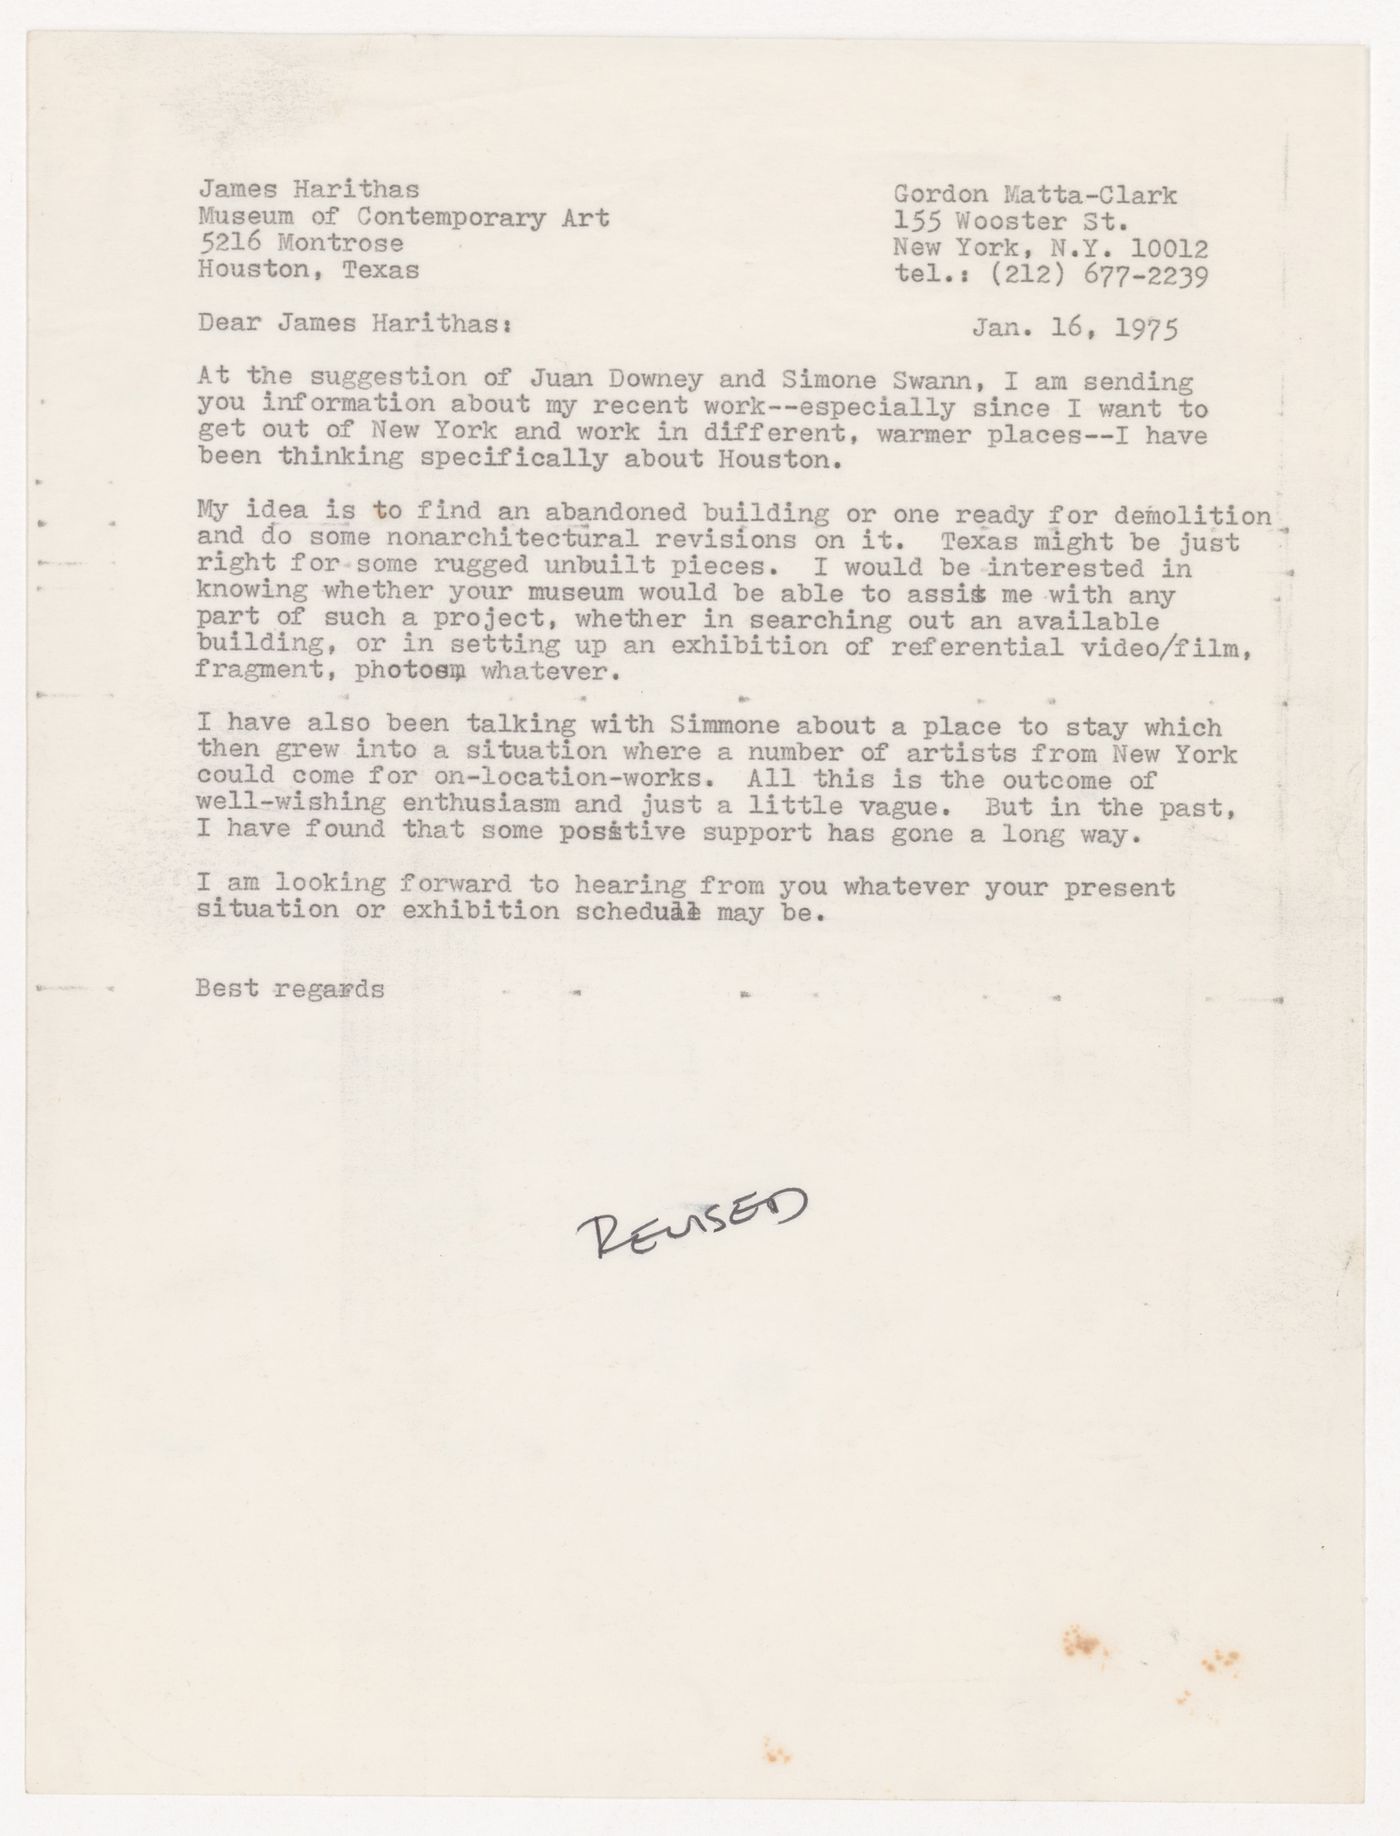 Letter from Gordon Matta-Clark to James Harithas